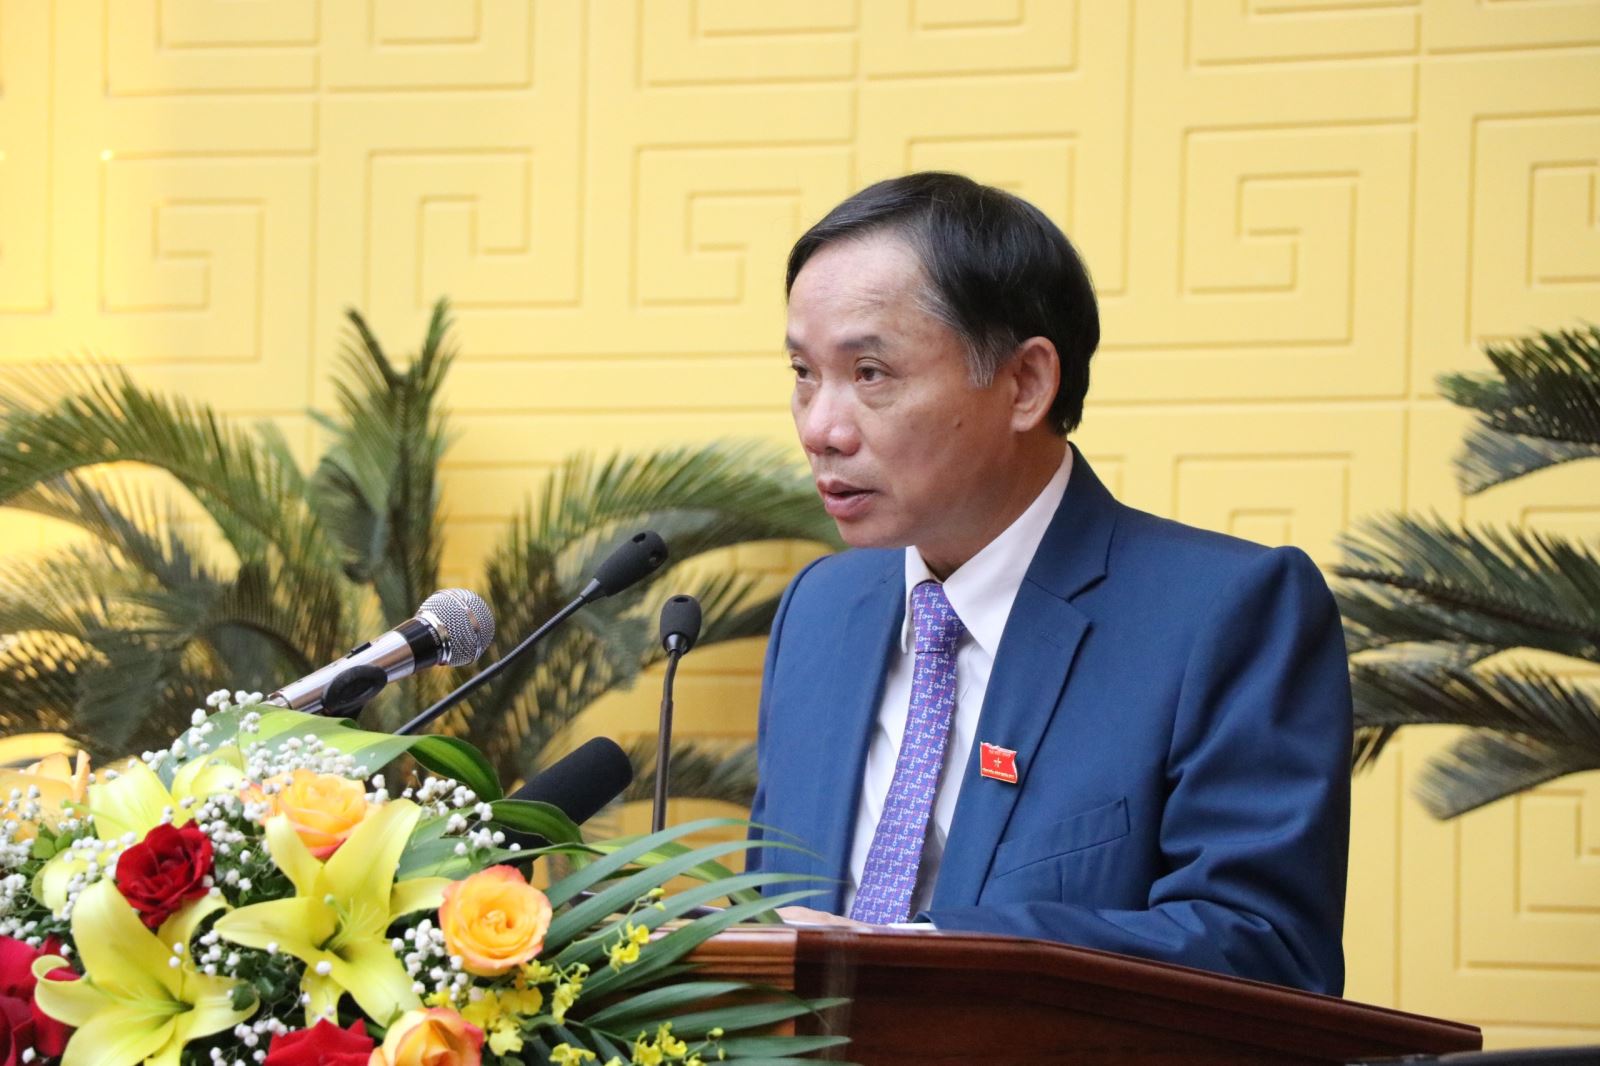 Phó Bí thư Tỉnh ủy, Chủ tịch UBND tỉnh Bùi Văn Khánh trình bày báo cáo tình hình thực hiện kế hoạch phát triển kinh tế - xã hội năm 2021; phương hướng nhiệm vụ phát triển kinh tế - xã hội năm 2022